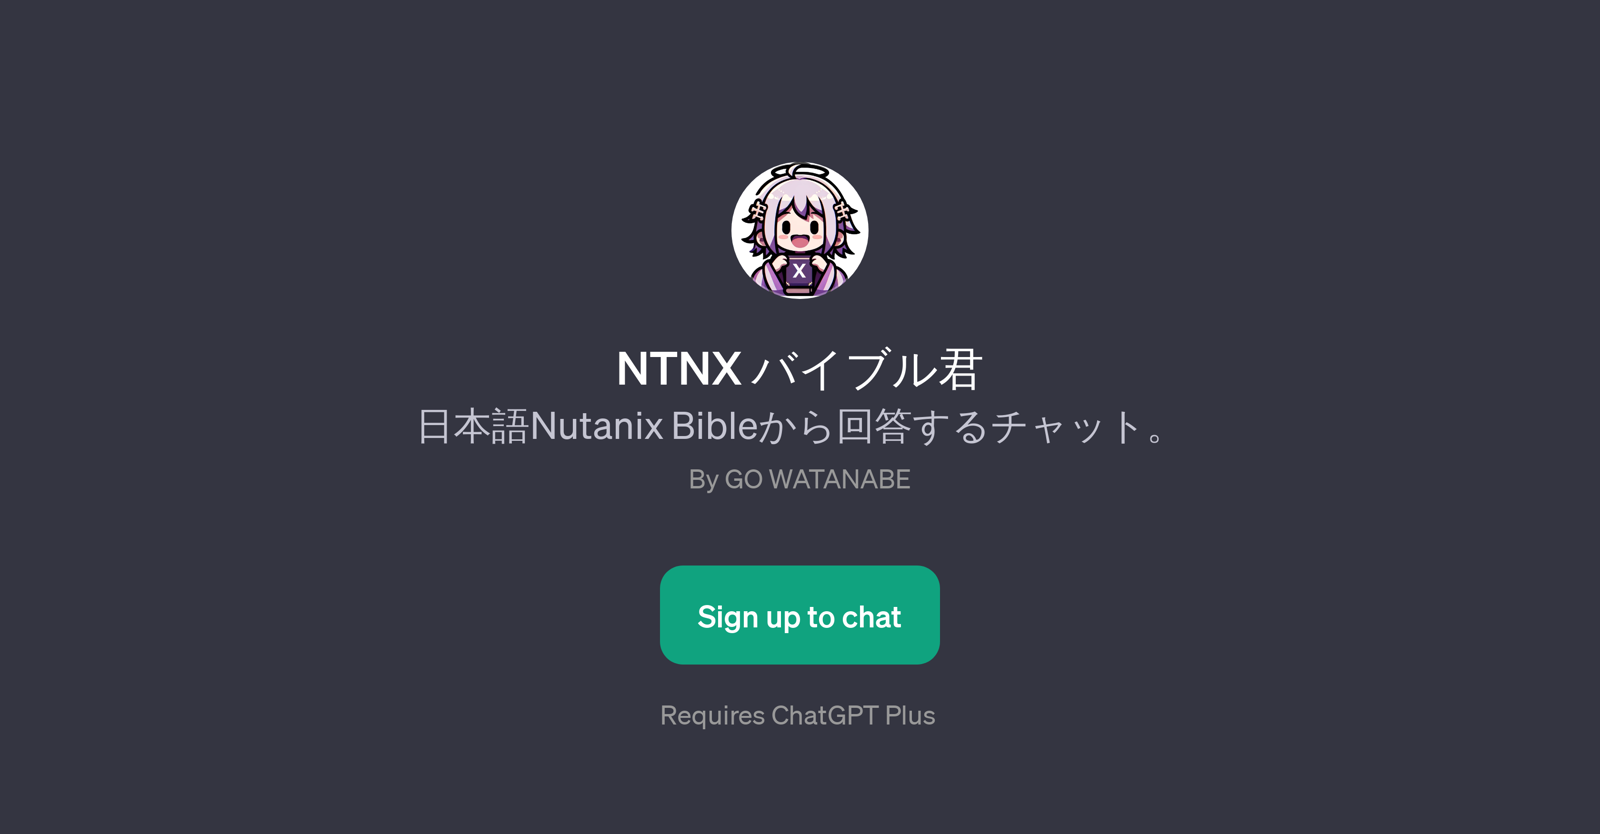 NTNX website